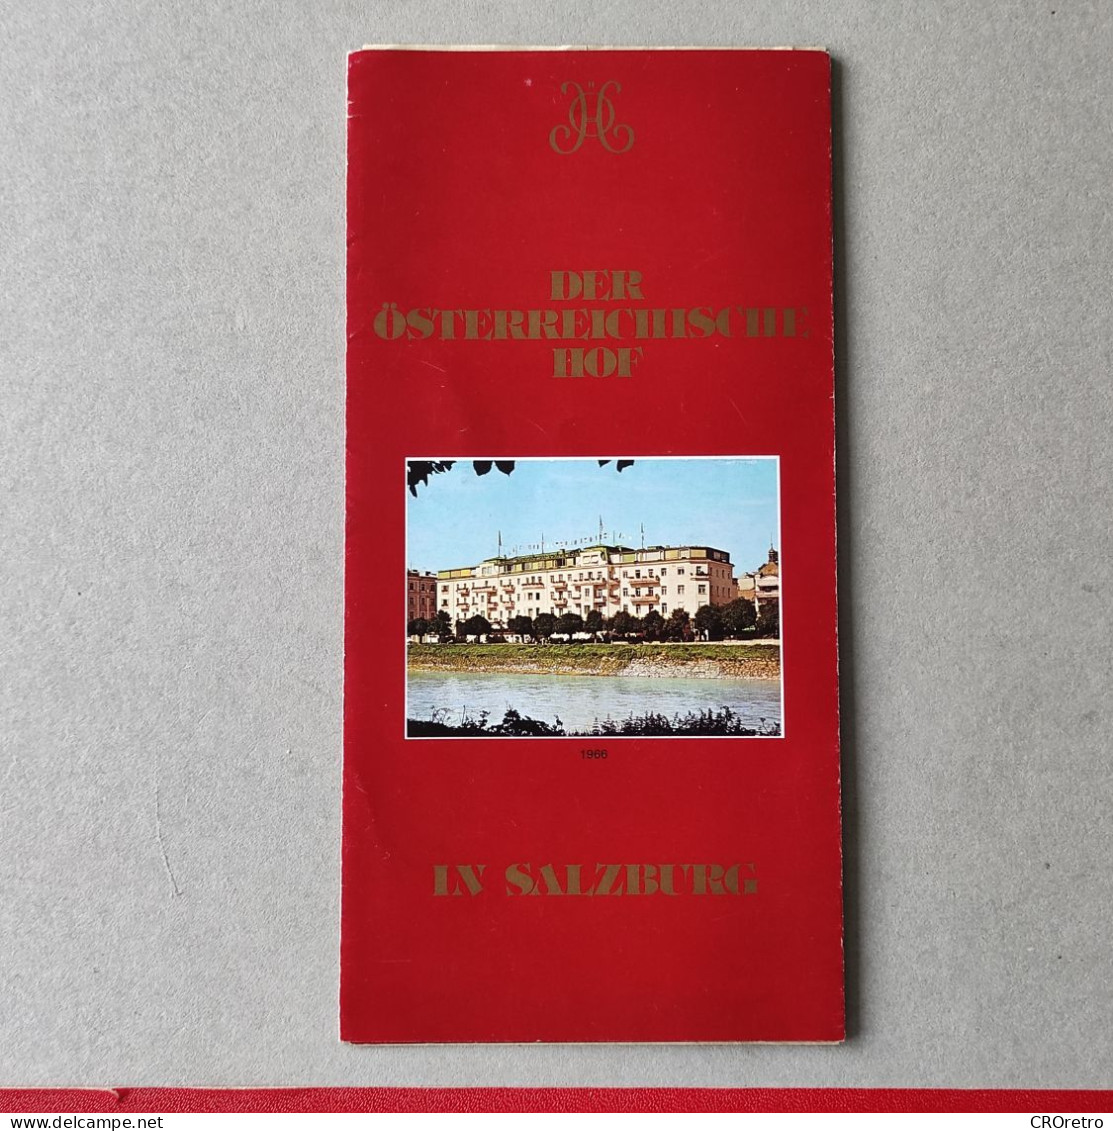 SALZBURG / AUSTRIA, Hotel Österreichischer Hof, Vintage Tourism Brochure, Prospect, Guide (pro3) - Dépliants Touristiques